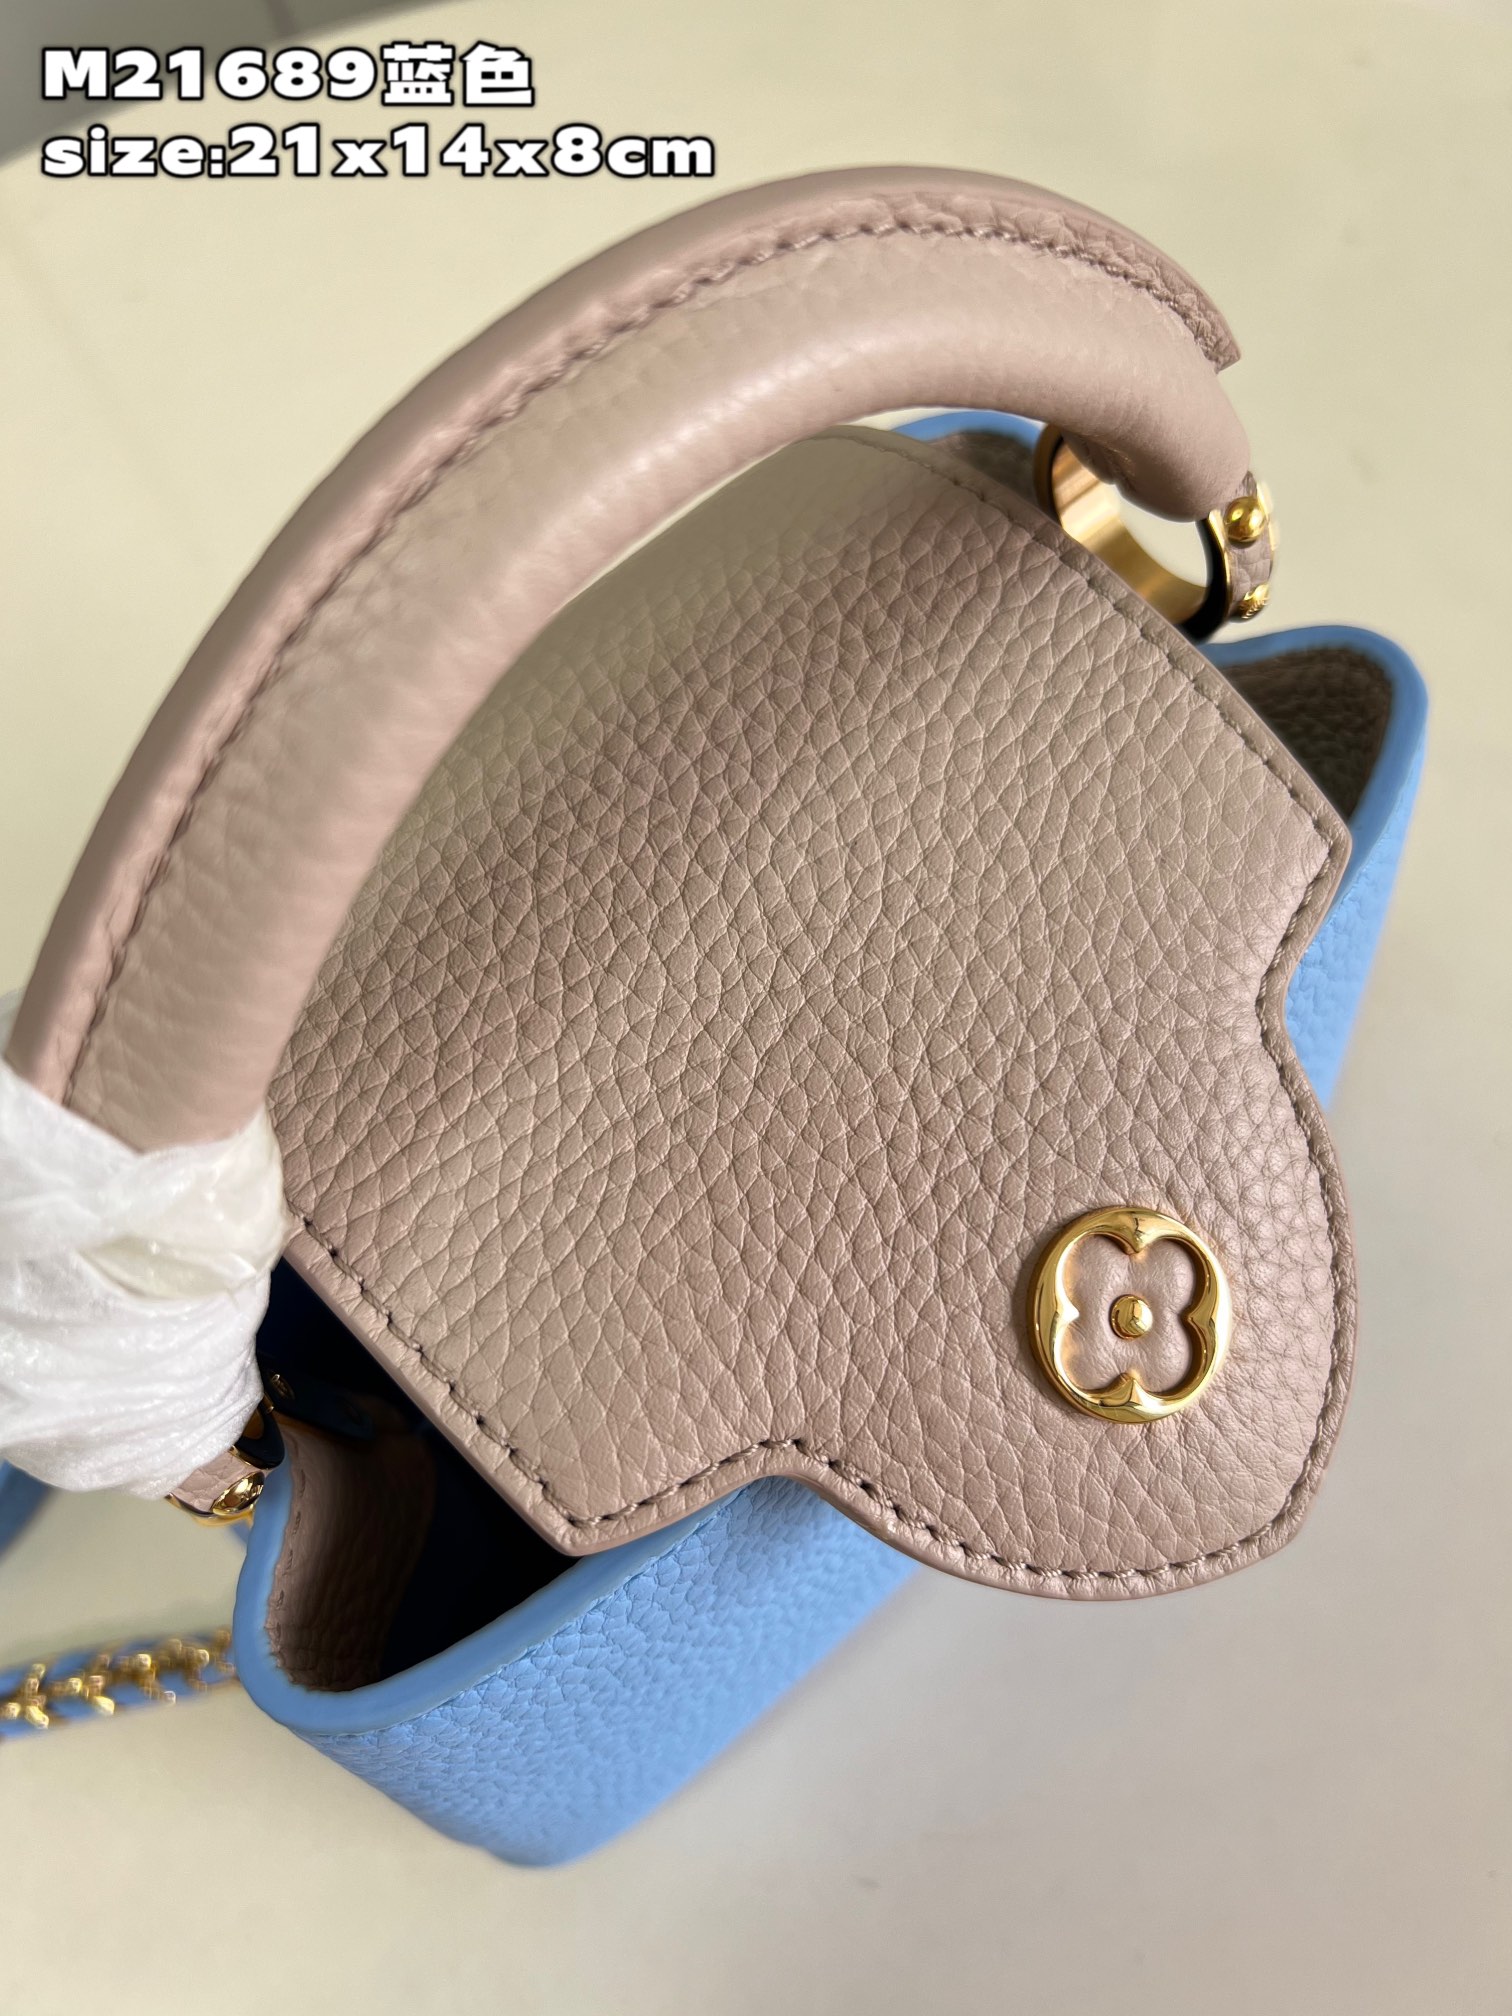 顶级原单M21689蓝色迷你此款Taurillon皮革版Capucinesmini手袋呈现柔美清新的色调